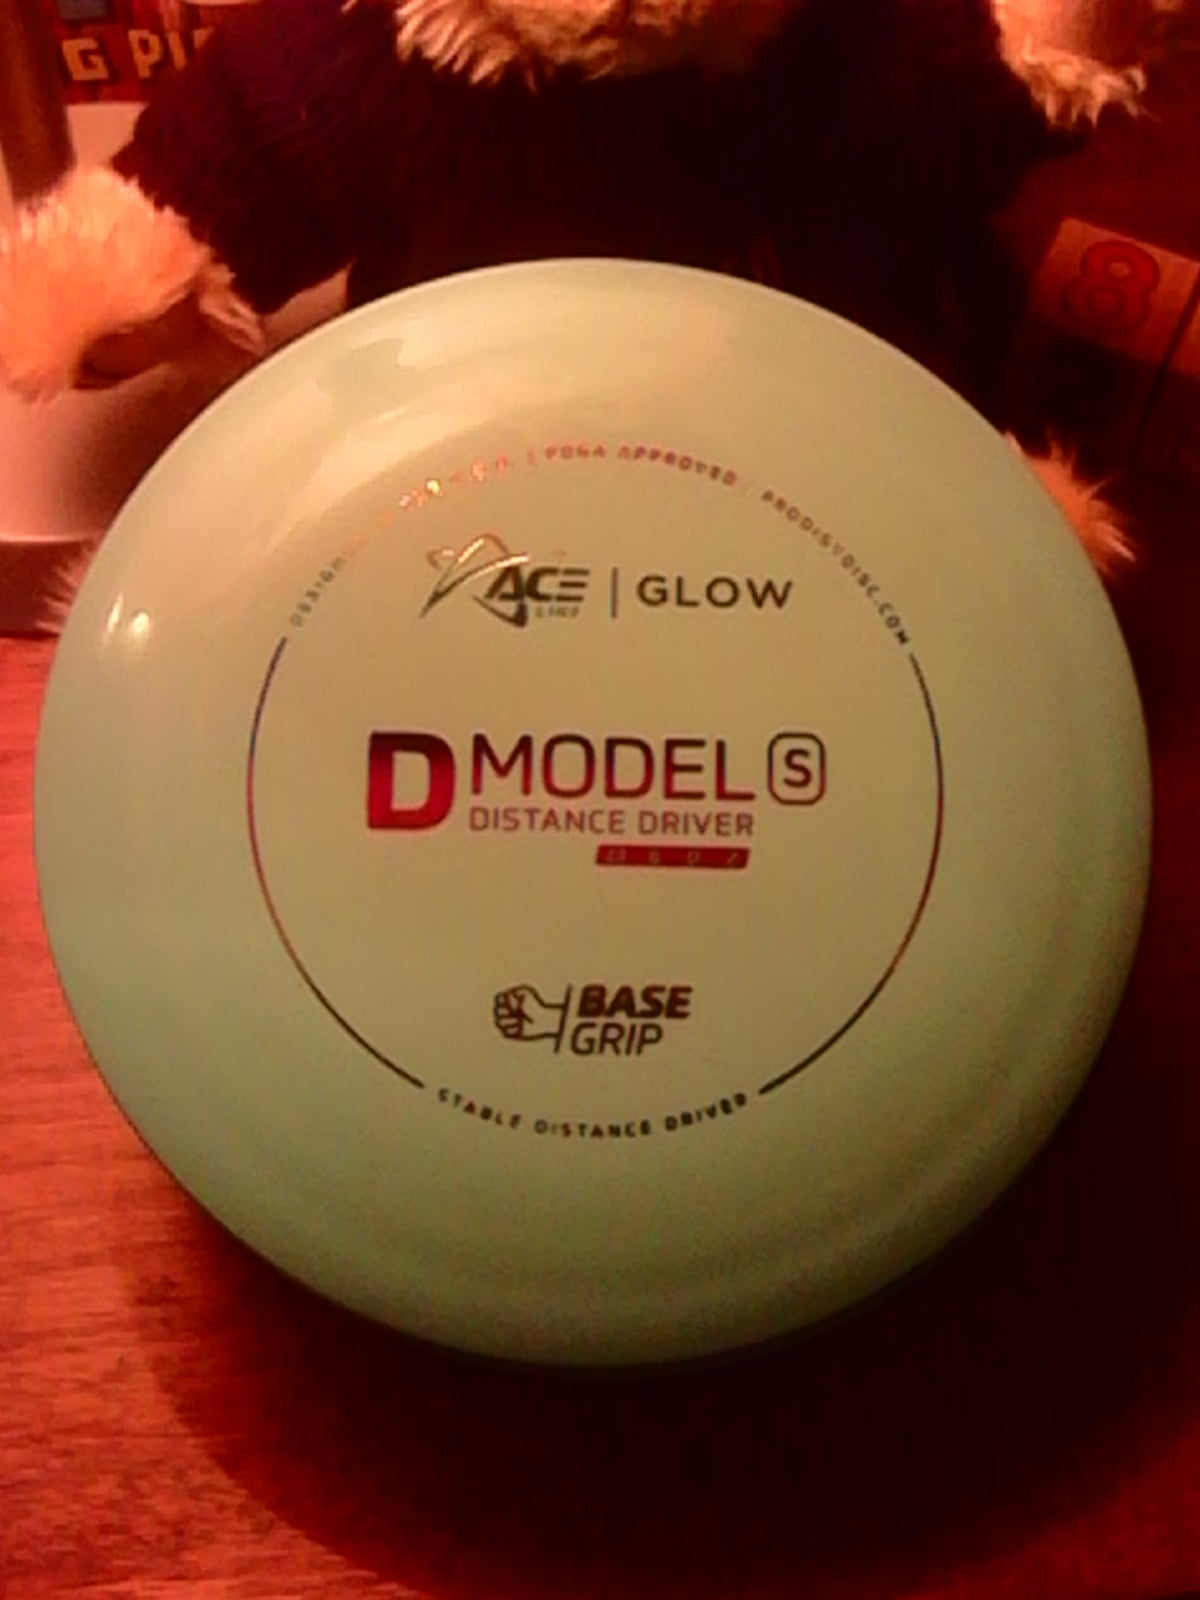 Prodigy Aceline Base Grip Glow D Model S 174 Grams (GDS1A,B,C,D)